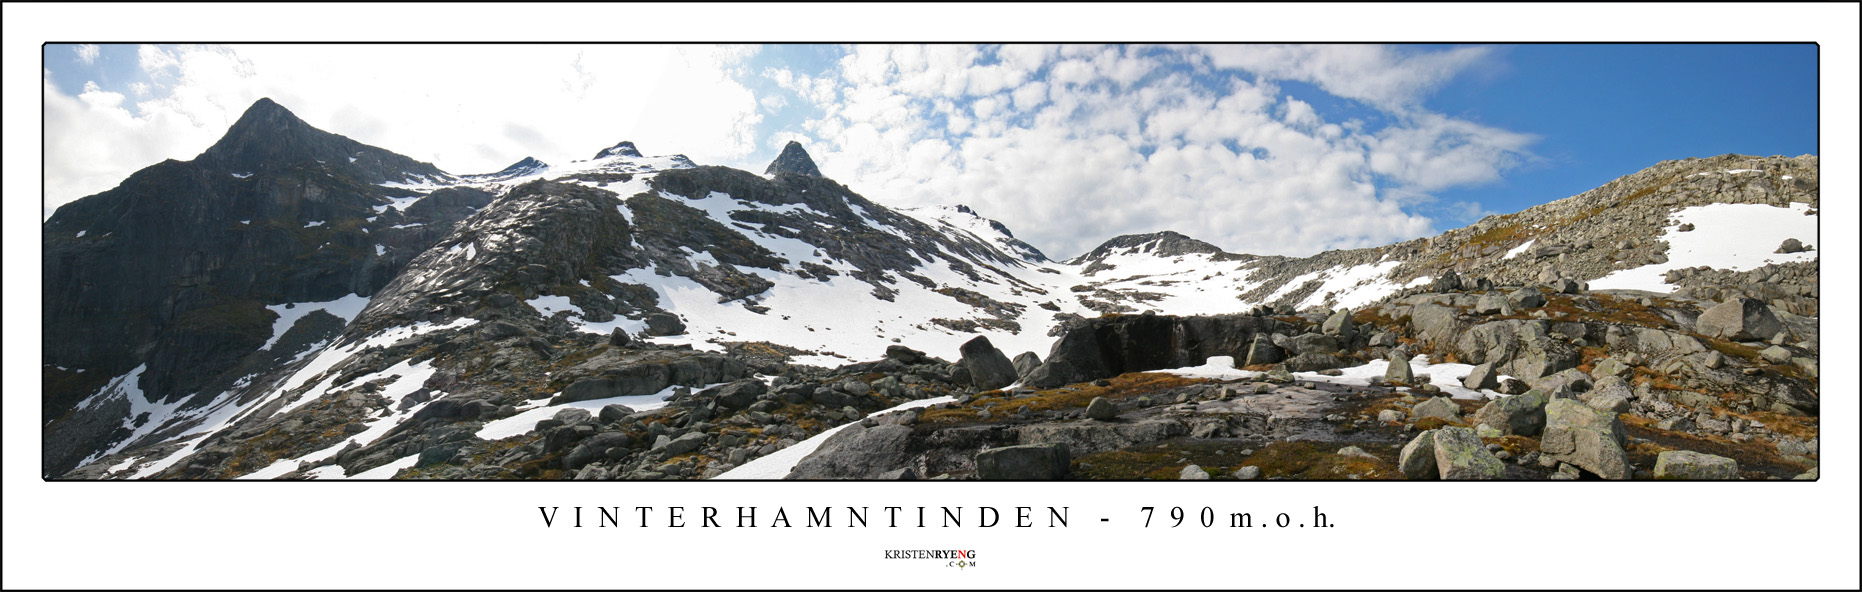 Vinterhamntinden2.jpg - Utsikt mot Vinterhamntinden (790 moh) litt til høyre for midten.